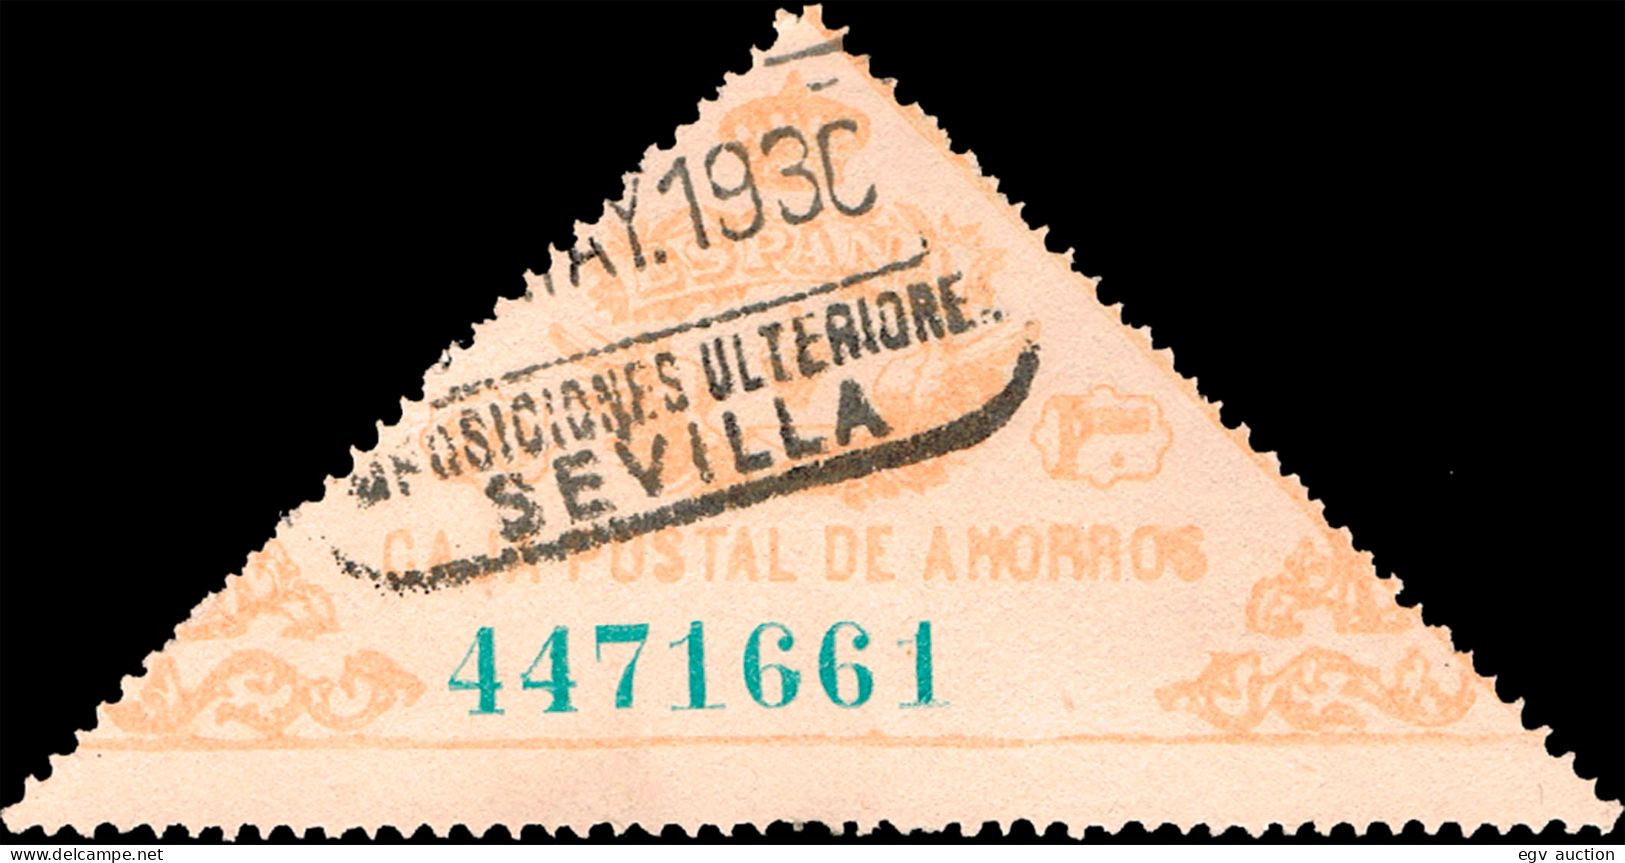 Sevilla - Caja Postal Ahorros - Gávez O 7 - Mat "Caja Postal De Ahorros - Sevilla Imposiciones Ulteriores" - Fiscali-postali